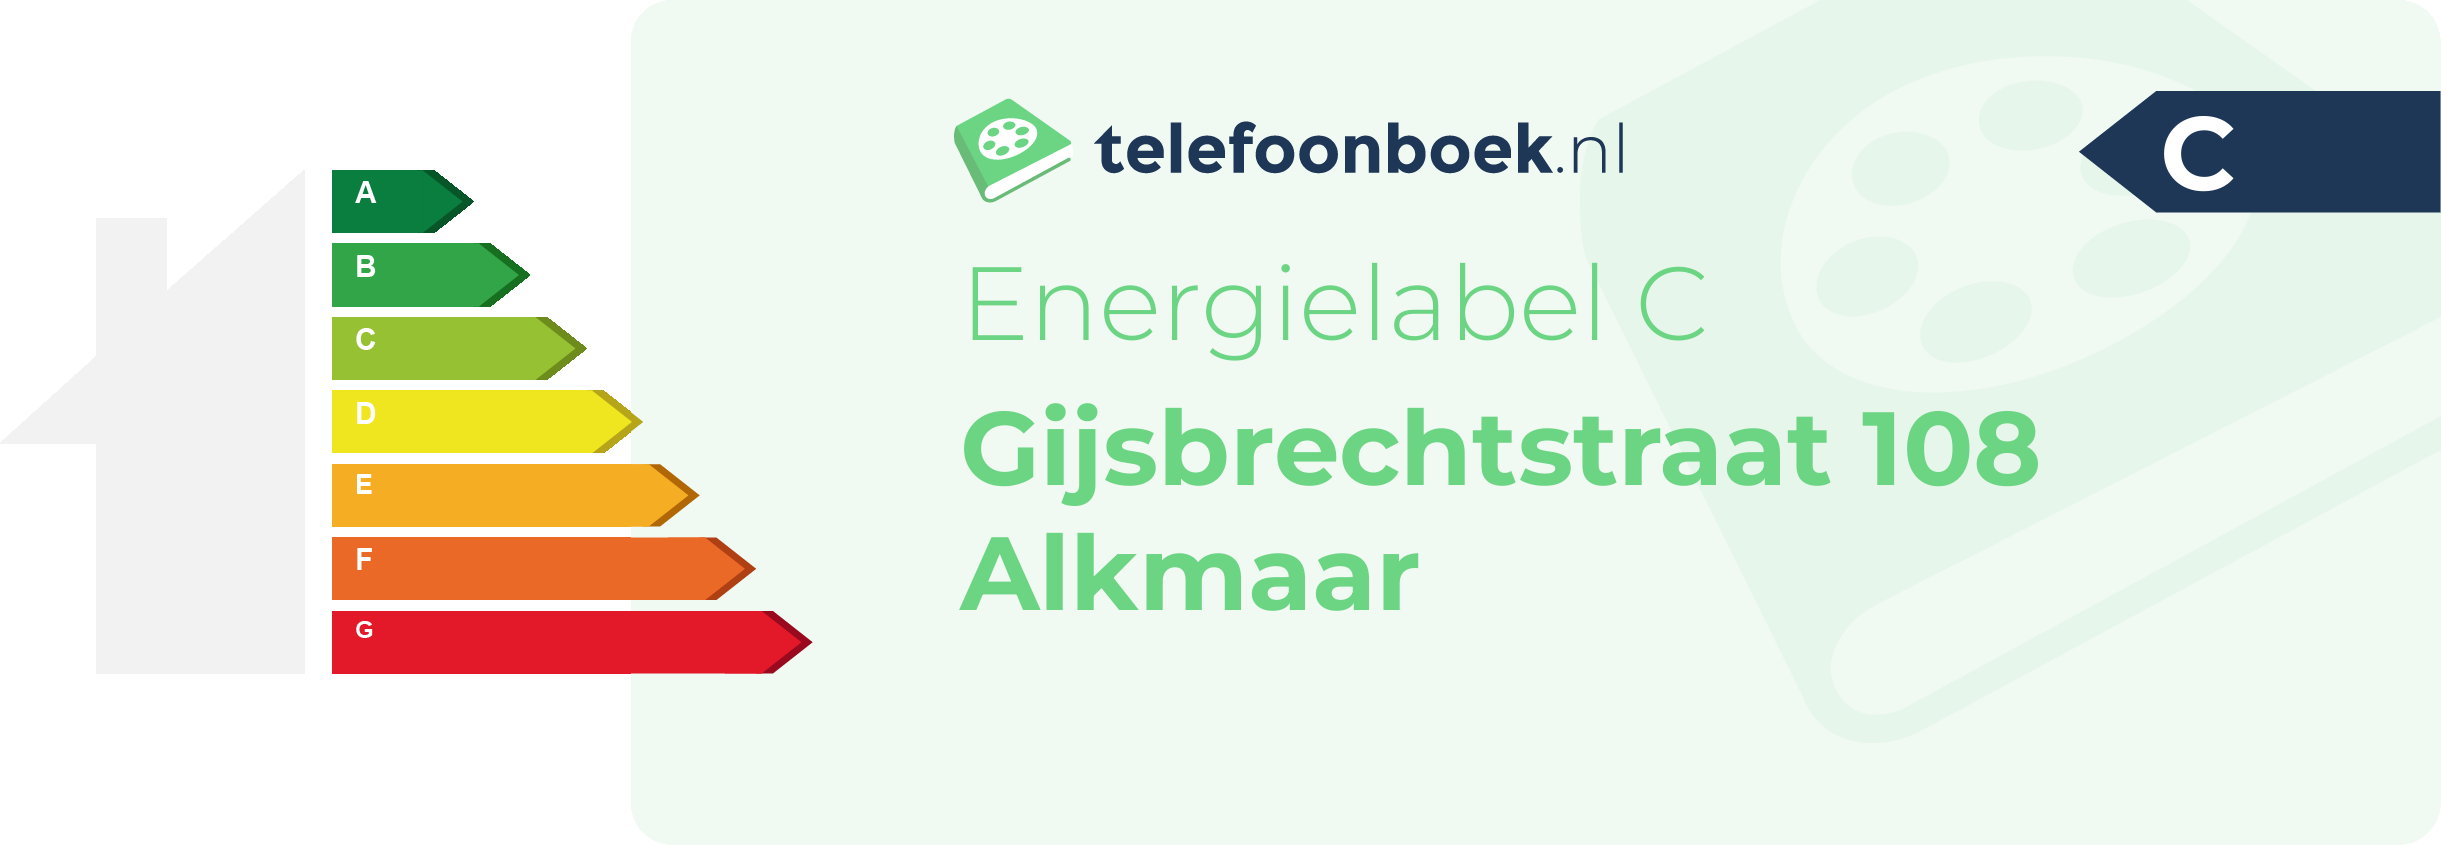 Energielabel Gijsbrechtstraat 108 Alkmaar